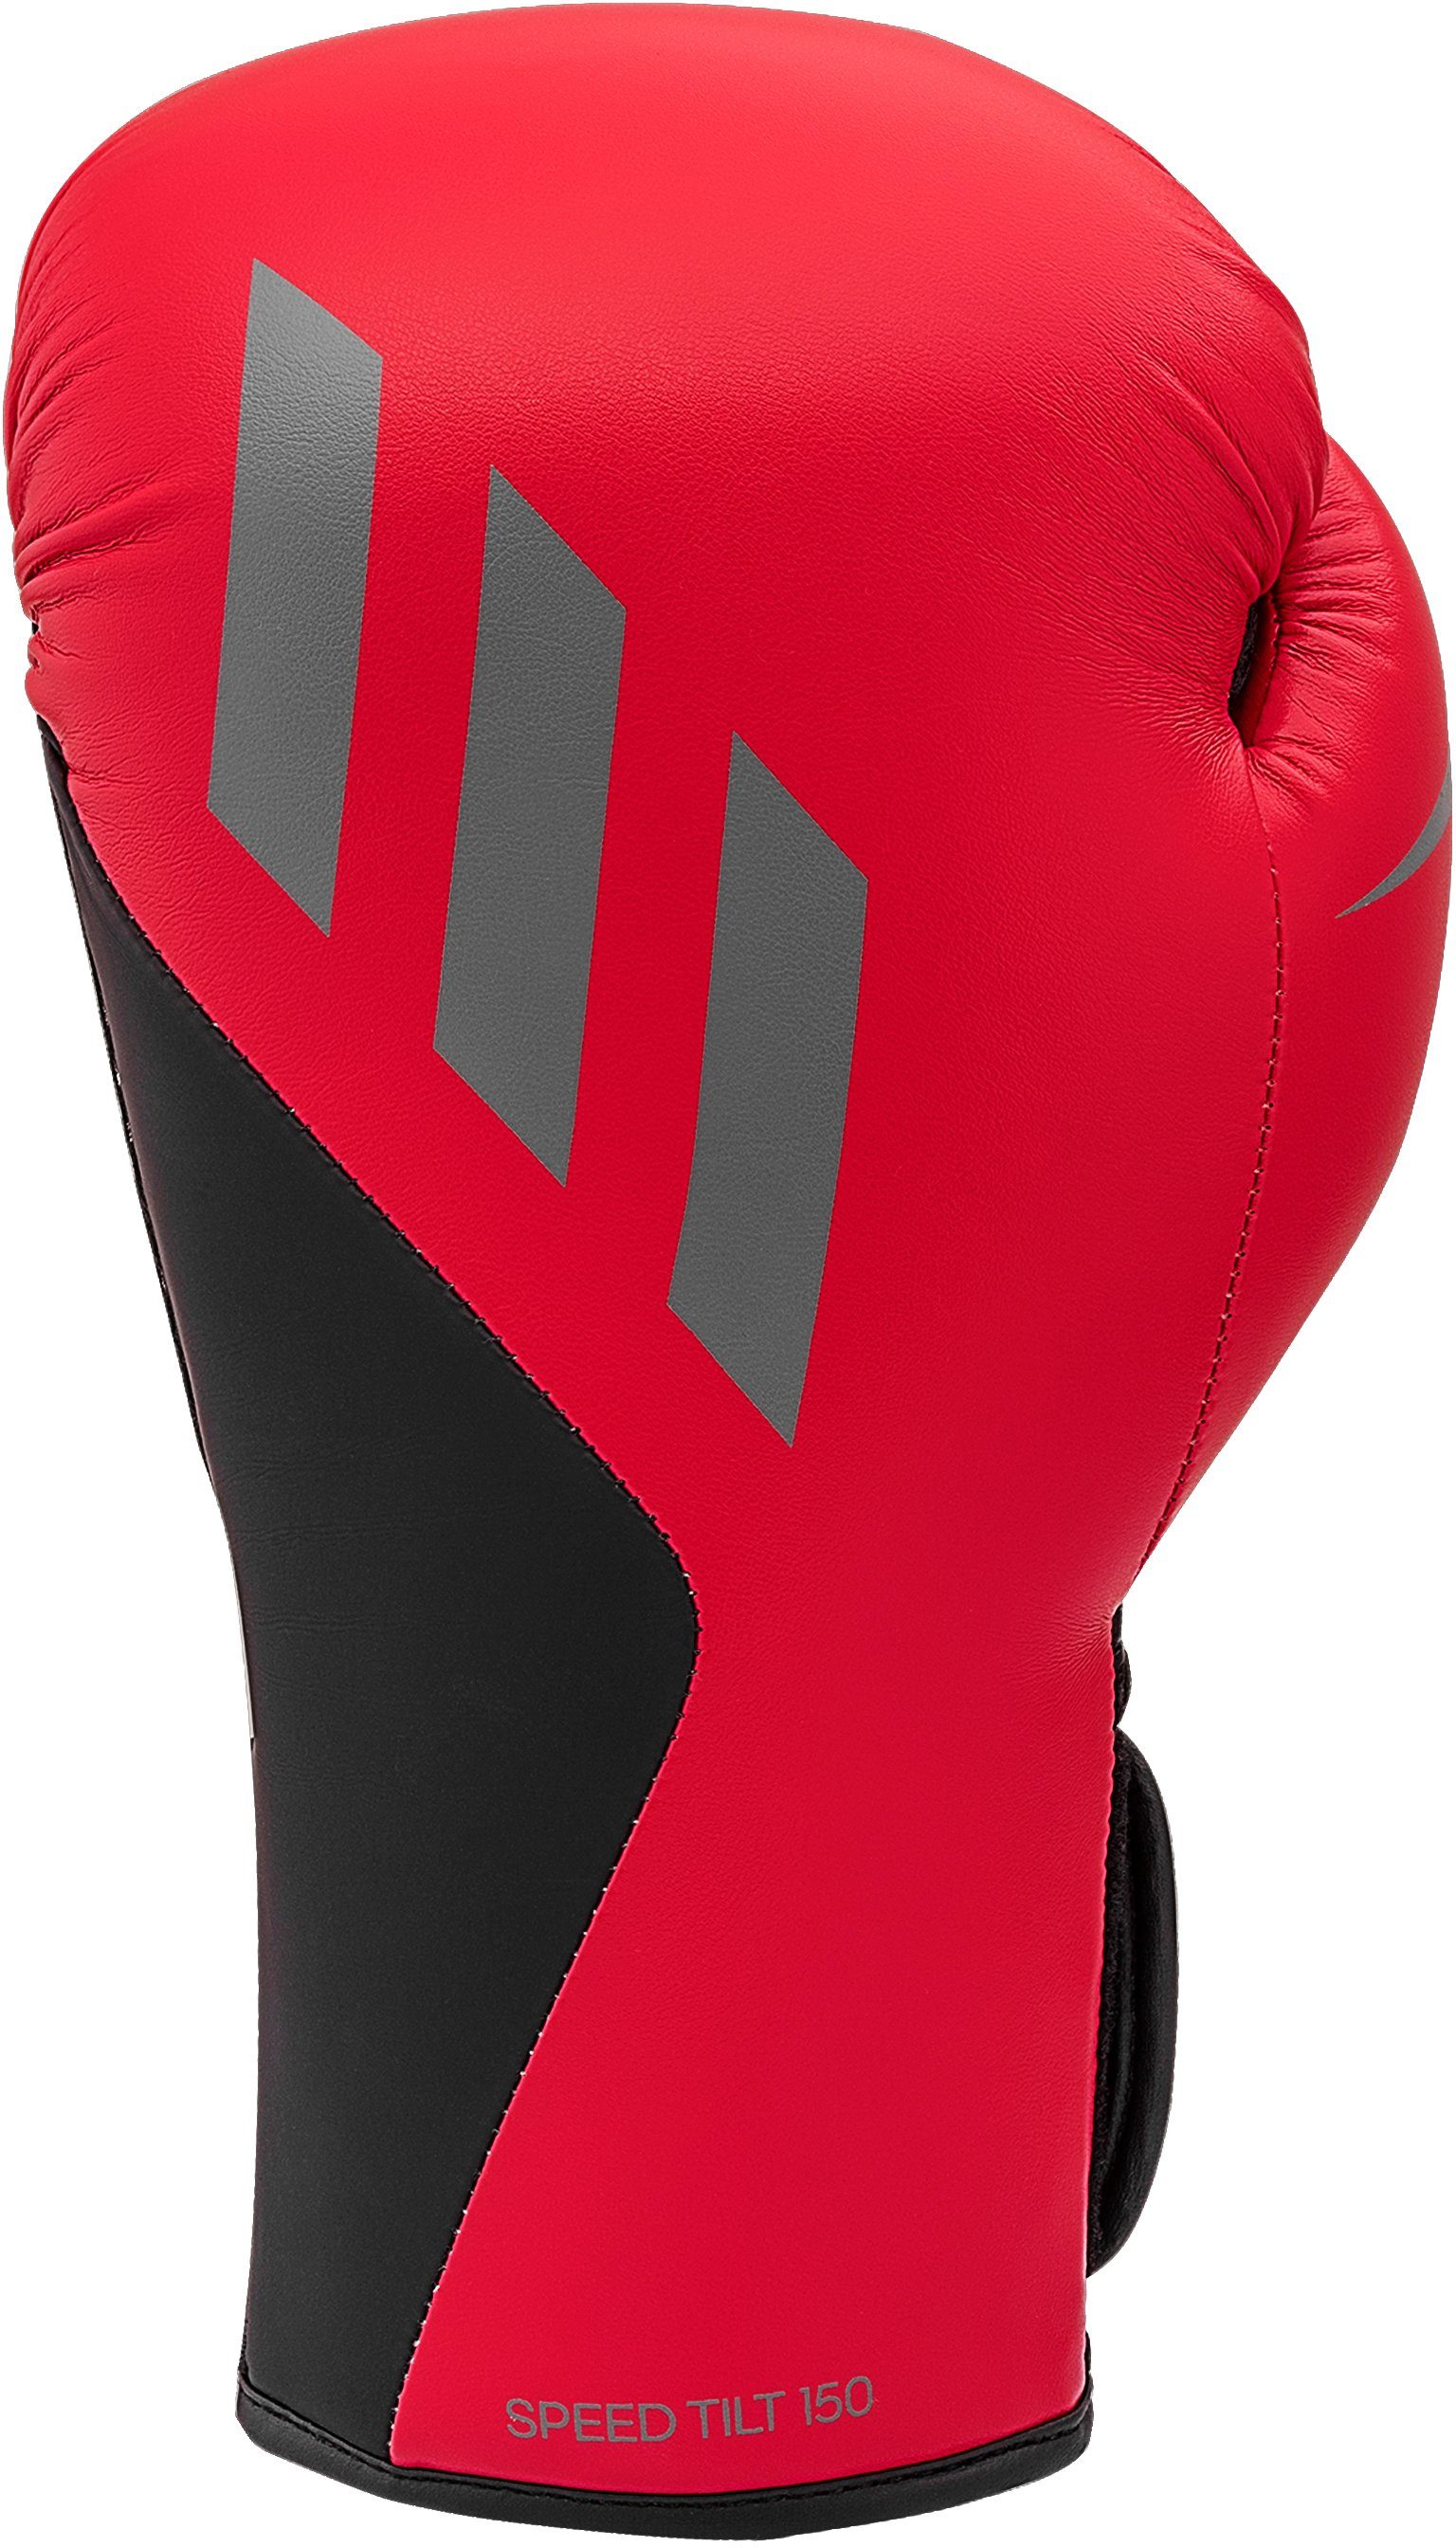 Tilt rot/schwarz Boxhandschuhe Performance 150 Speed adidas